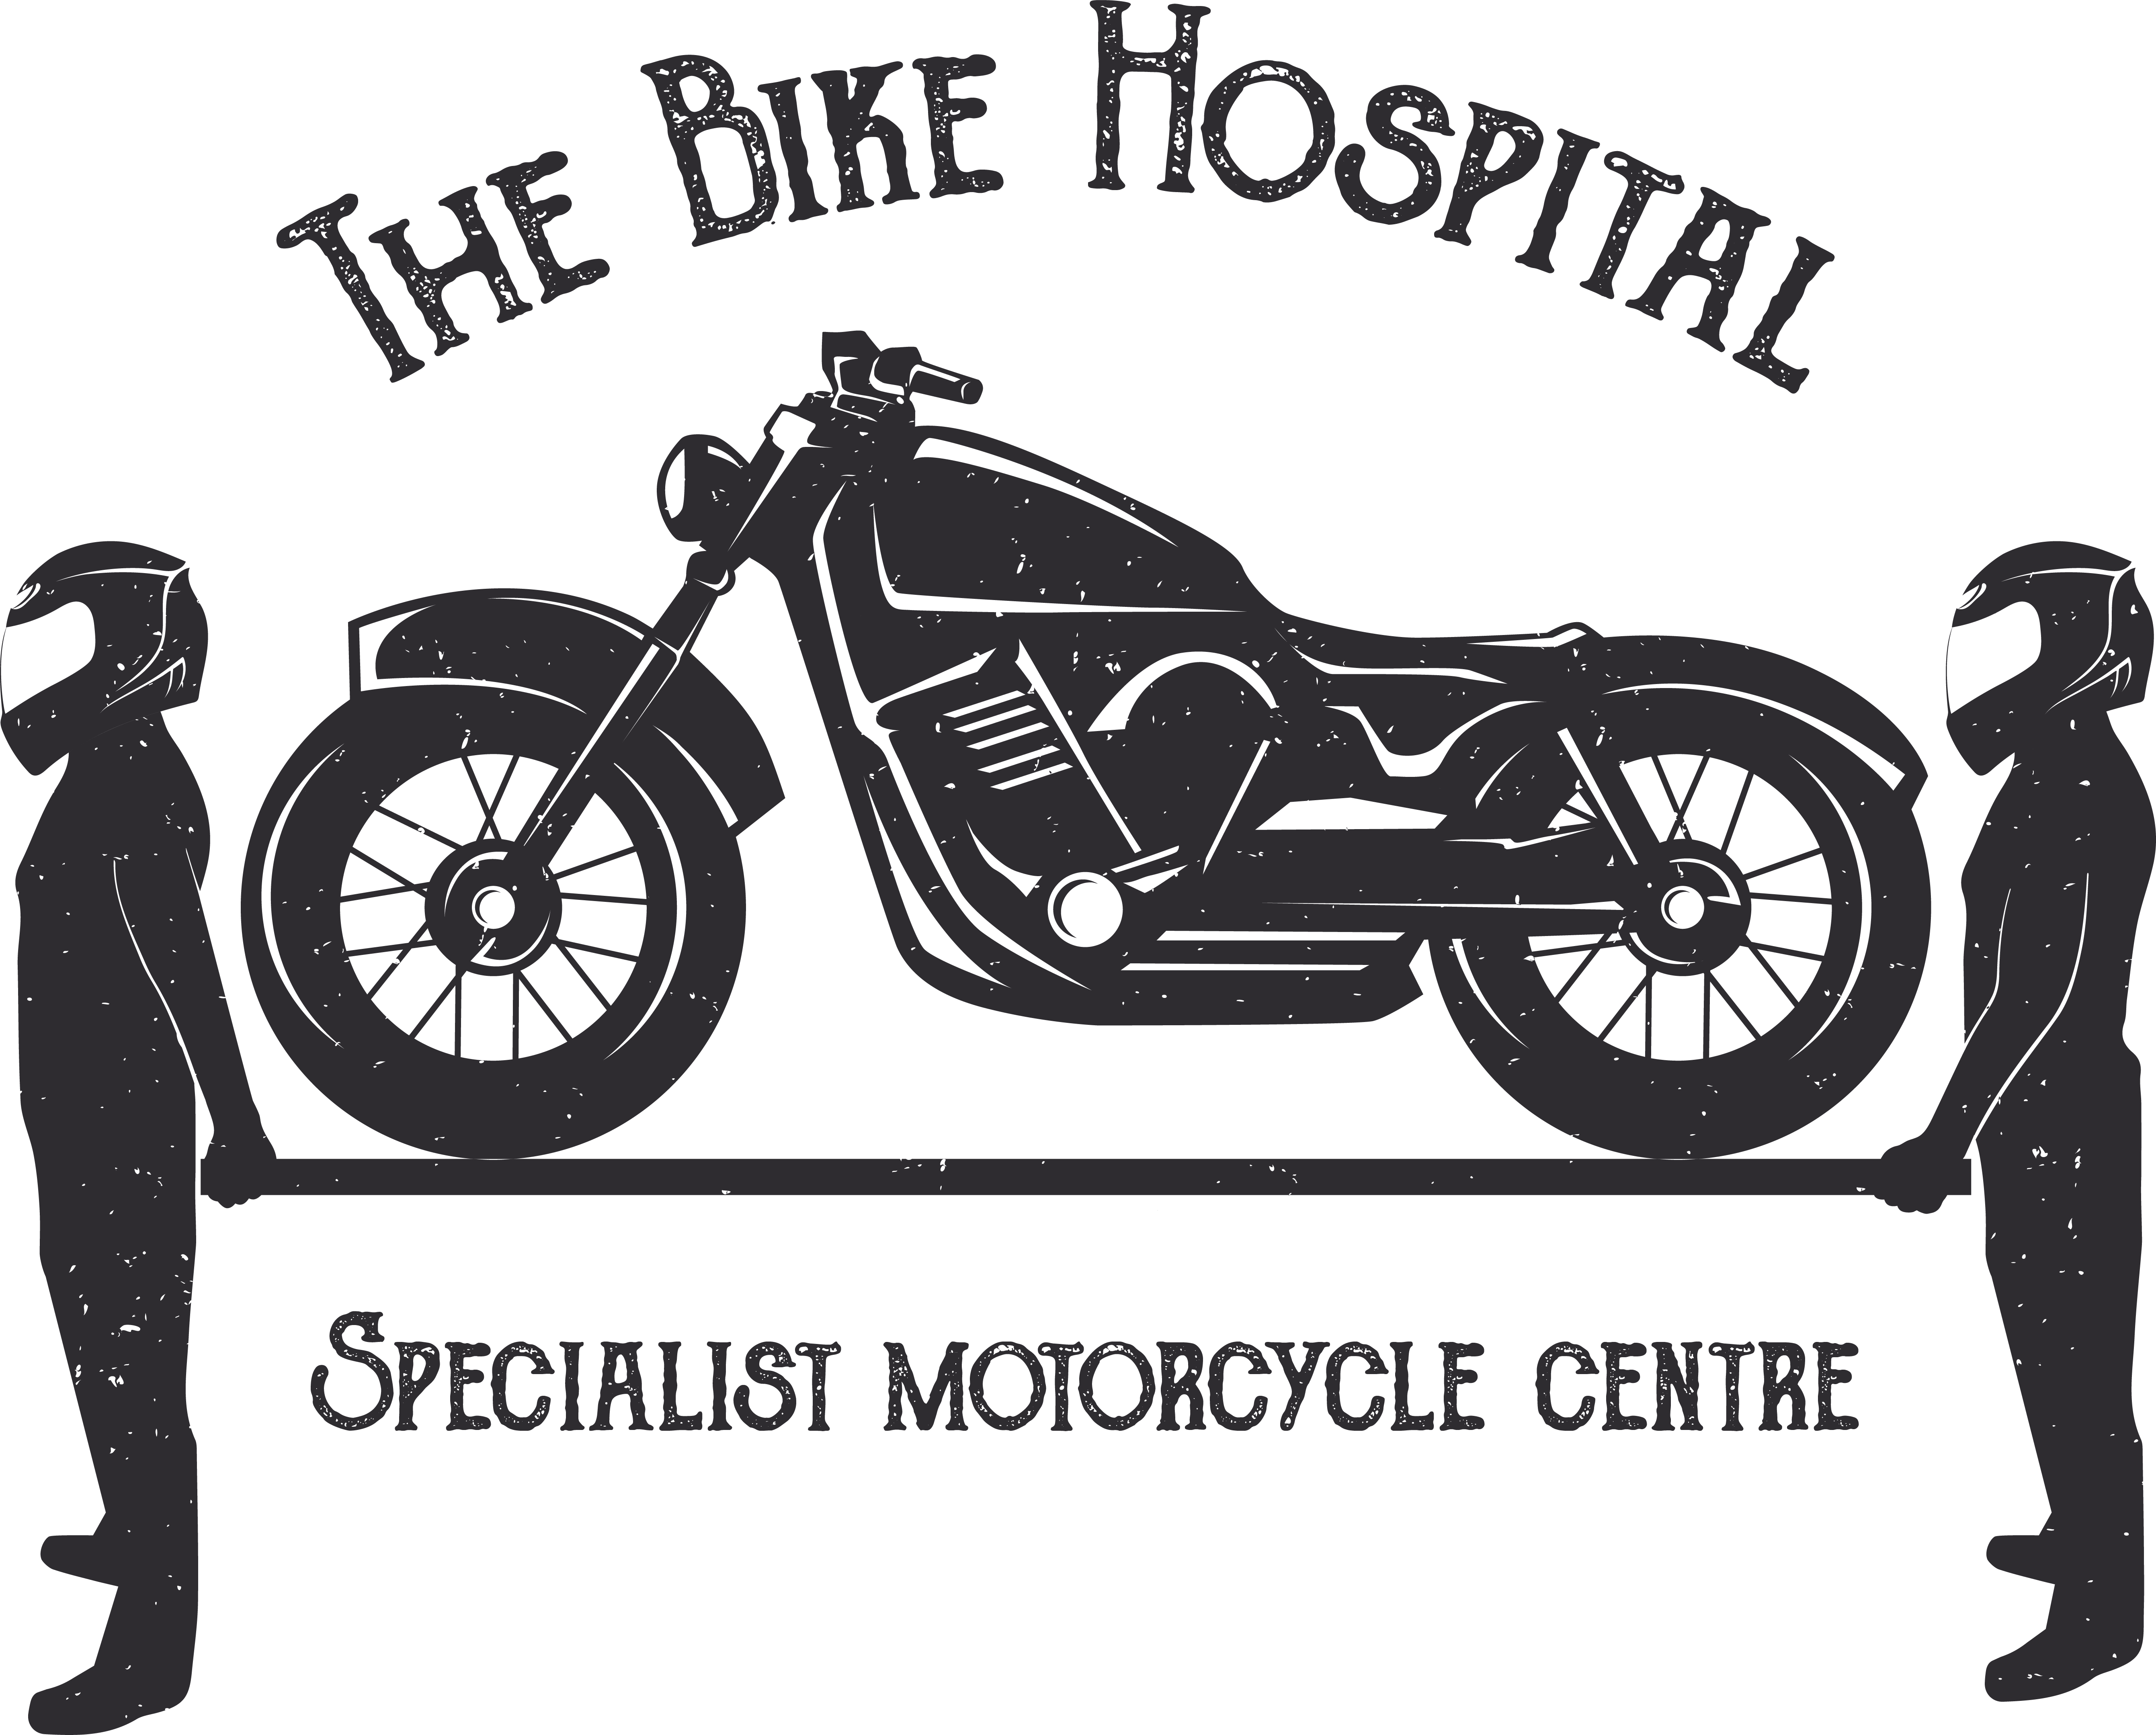 The Bike Hospital